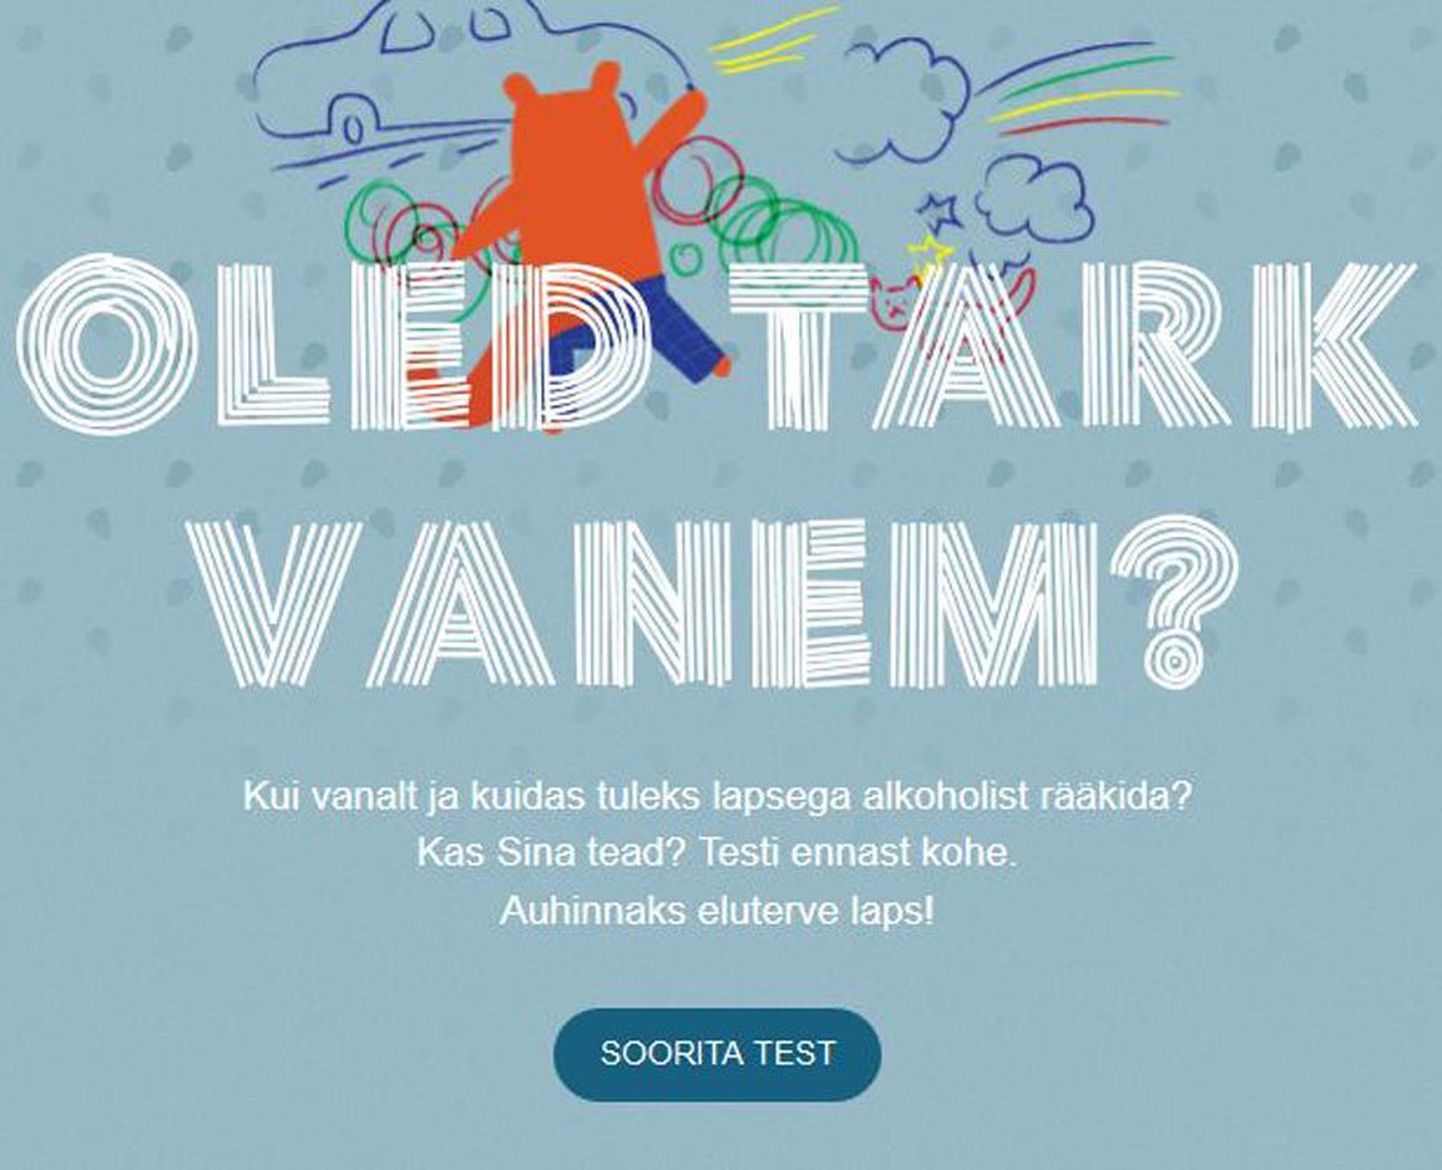 Veebilehel tarkvanem.ee ootab lapsevanemaid test, mis lubab neil proovida oma oskusi selles, kuidas lapsega meelemürkide tarvitamisest rääkida.